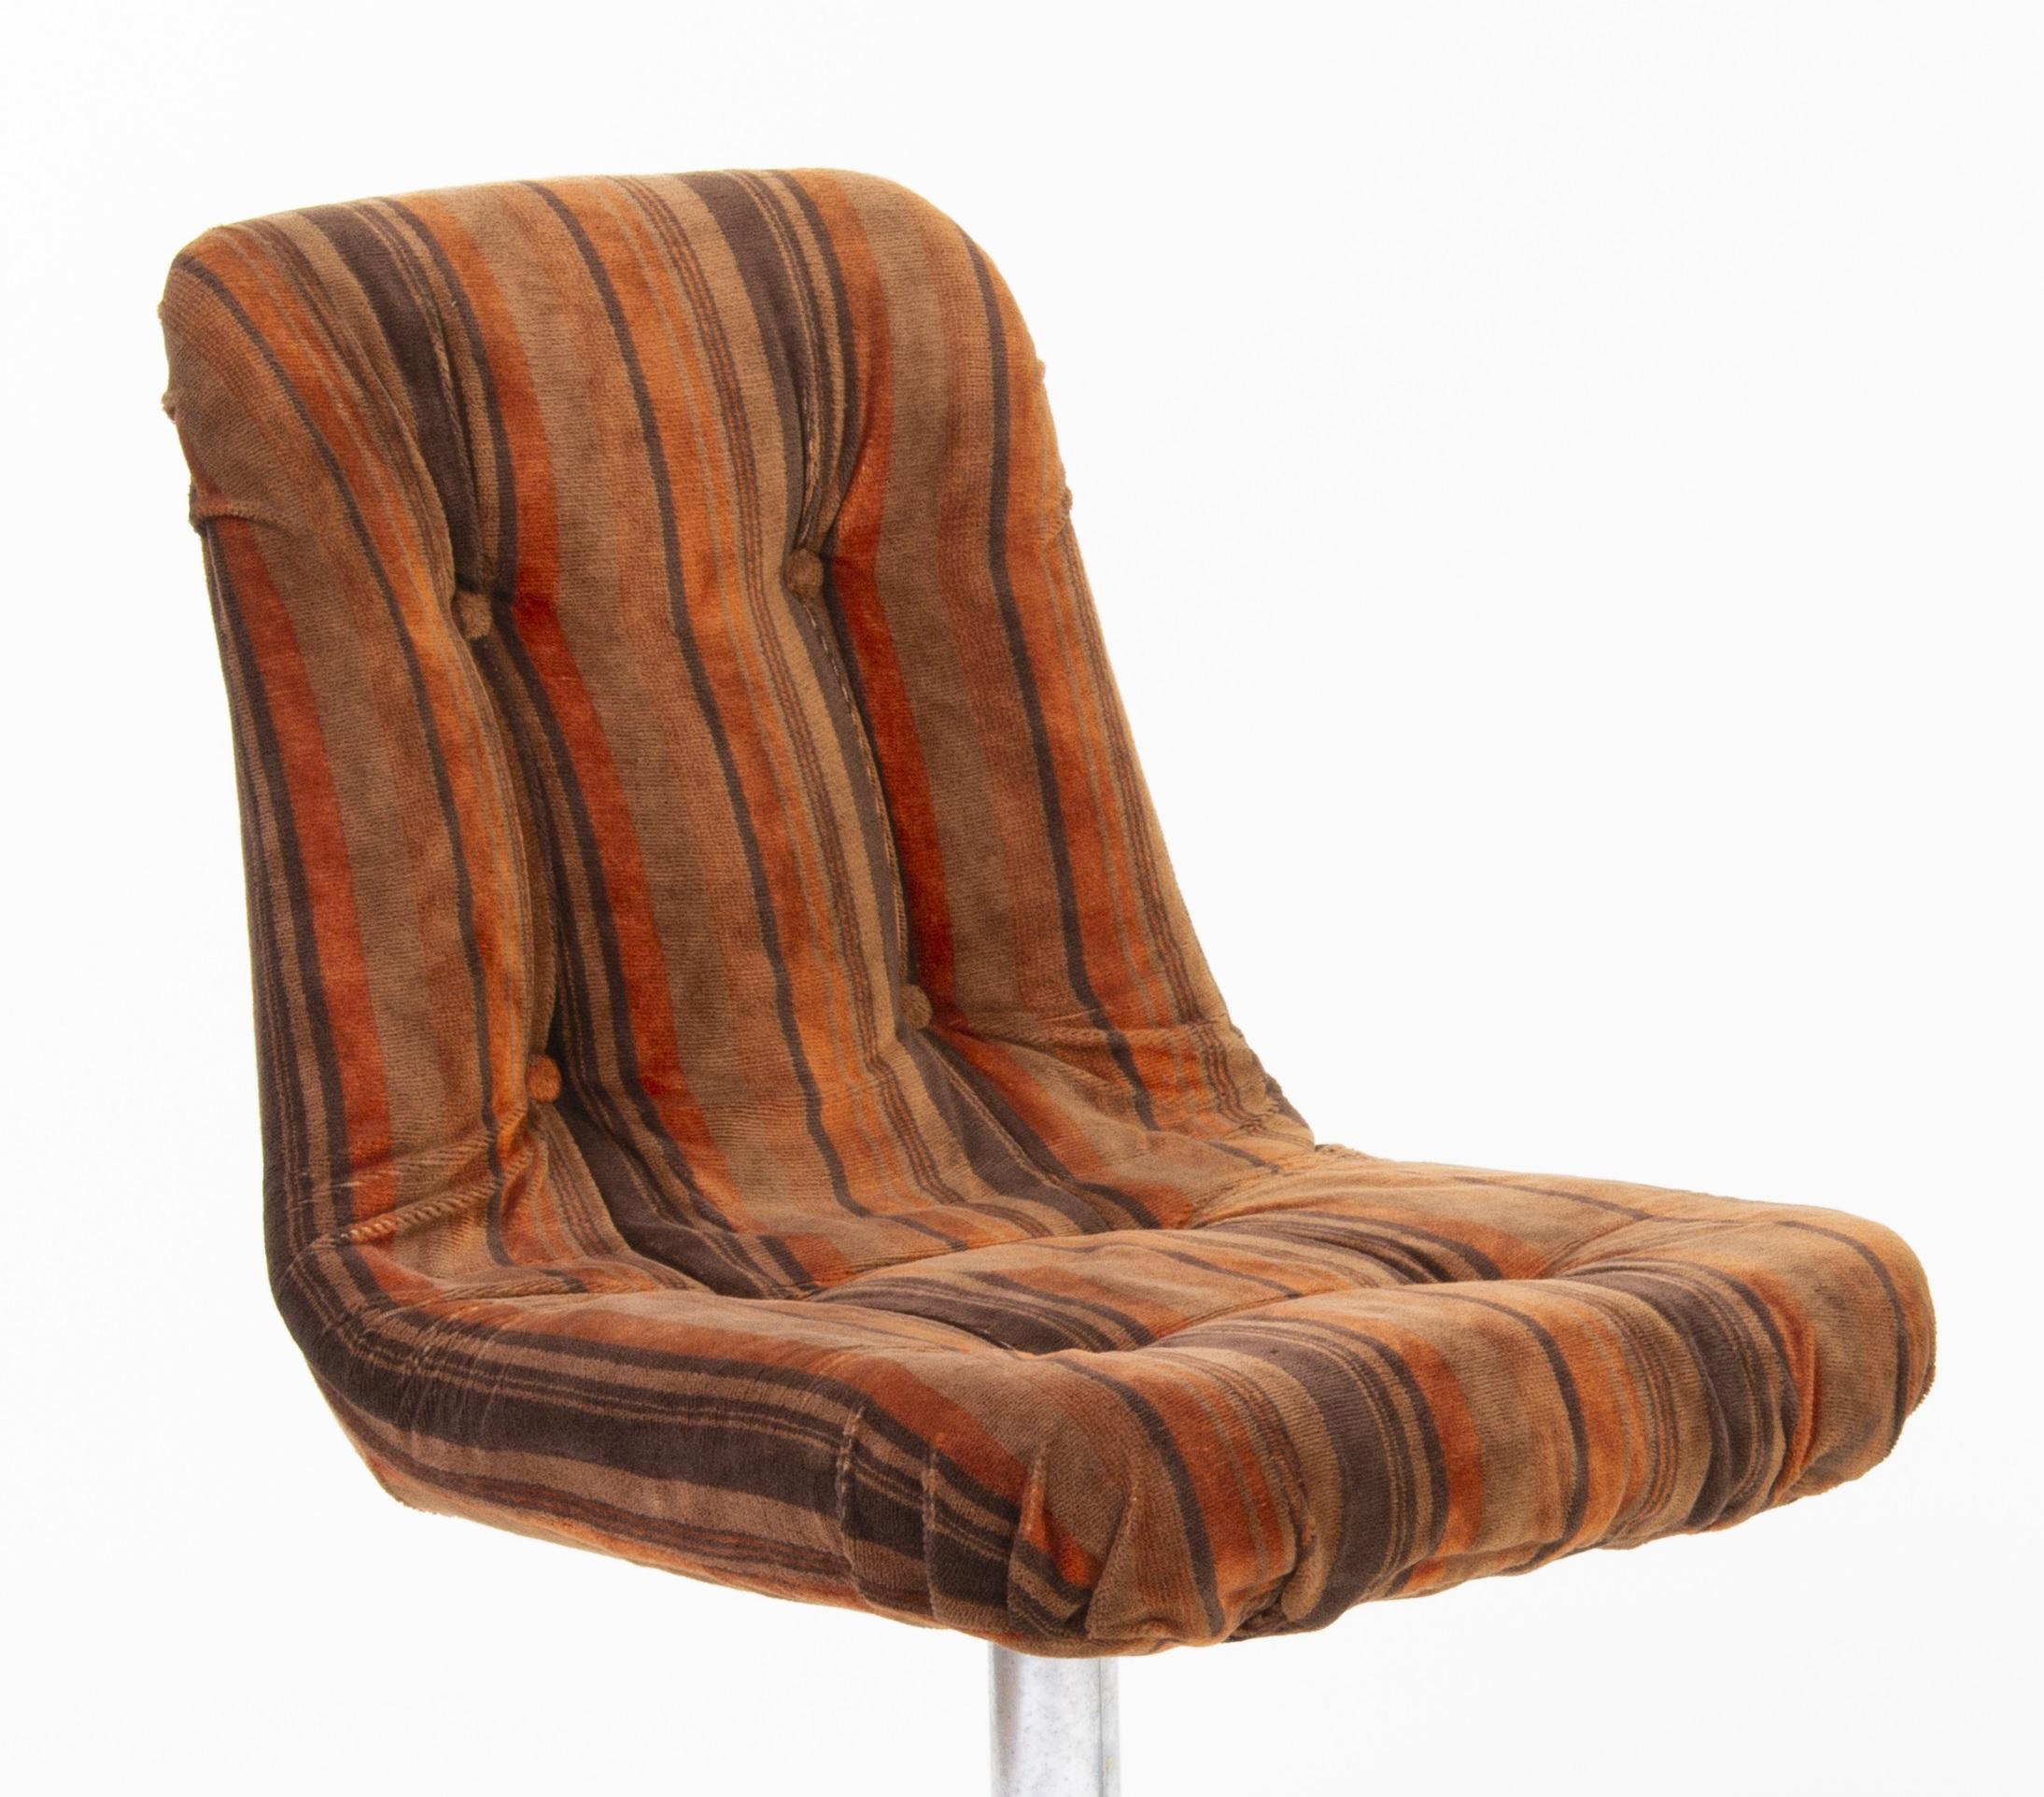 Ensemble de chaises pivotantes rétro colorées des années 1960.
Dans le style du design rétro.